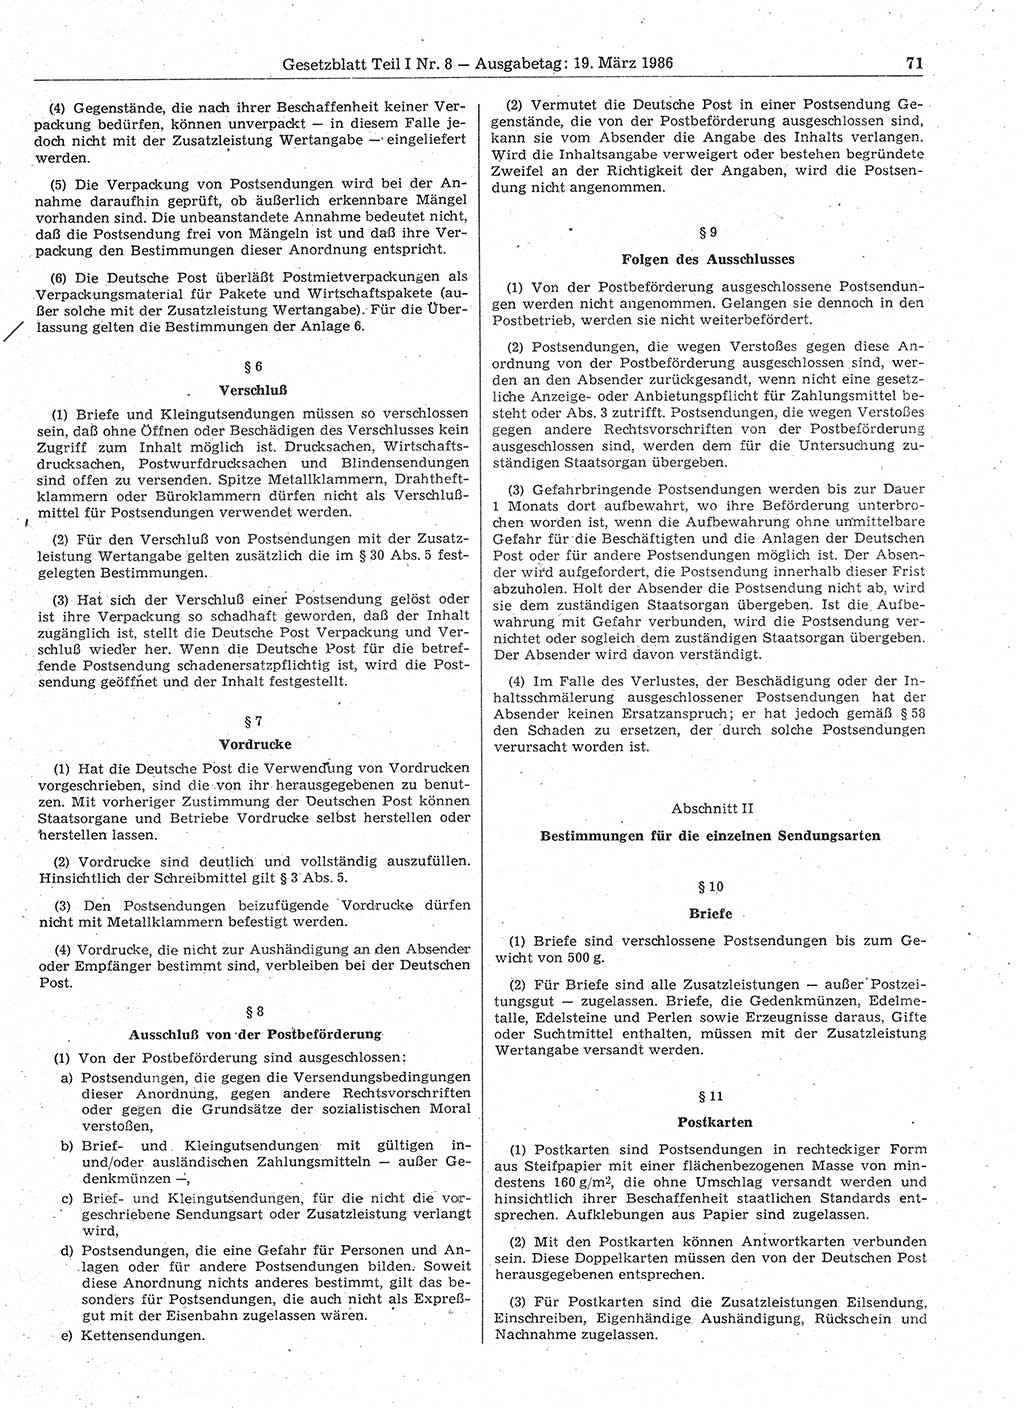 Gesetzblatt (GBl.) der Deutschen Demokratischen Republik (DDR) Teil Ⅰ 1986, Seite 71 (GBl. DDR Ⅰ 1986, S. 71)